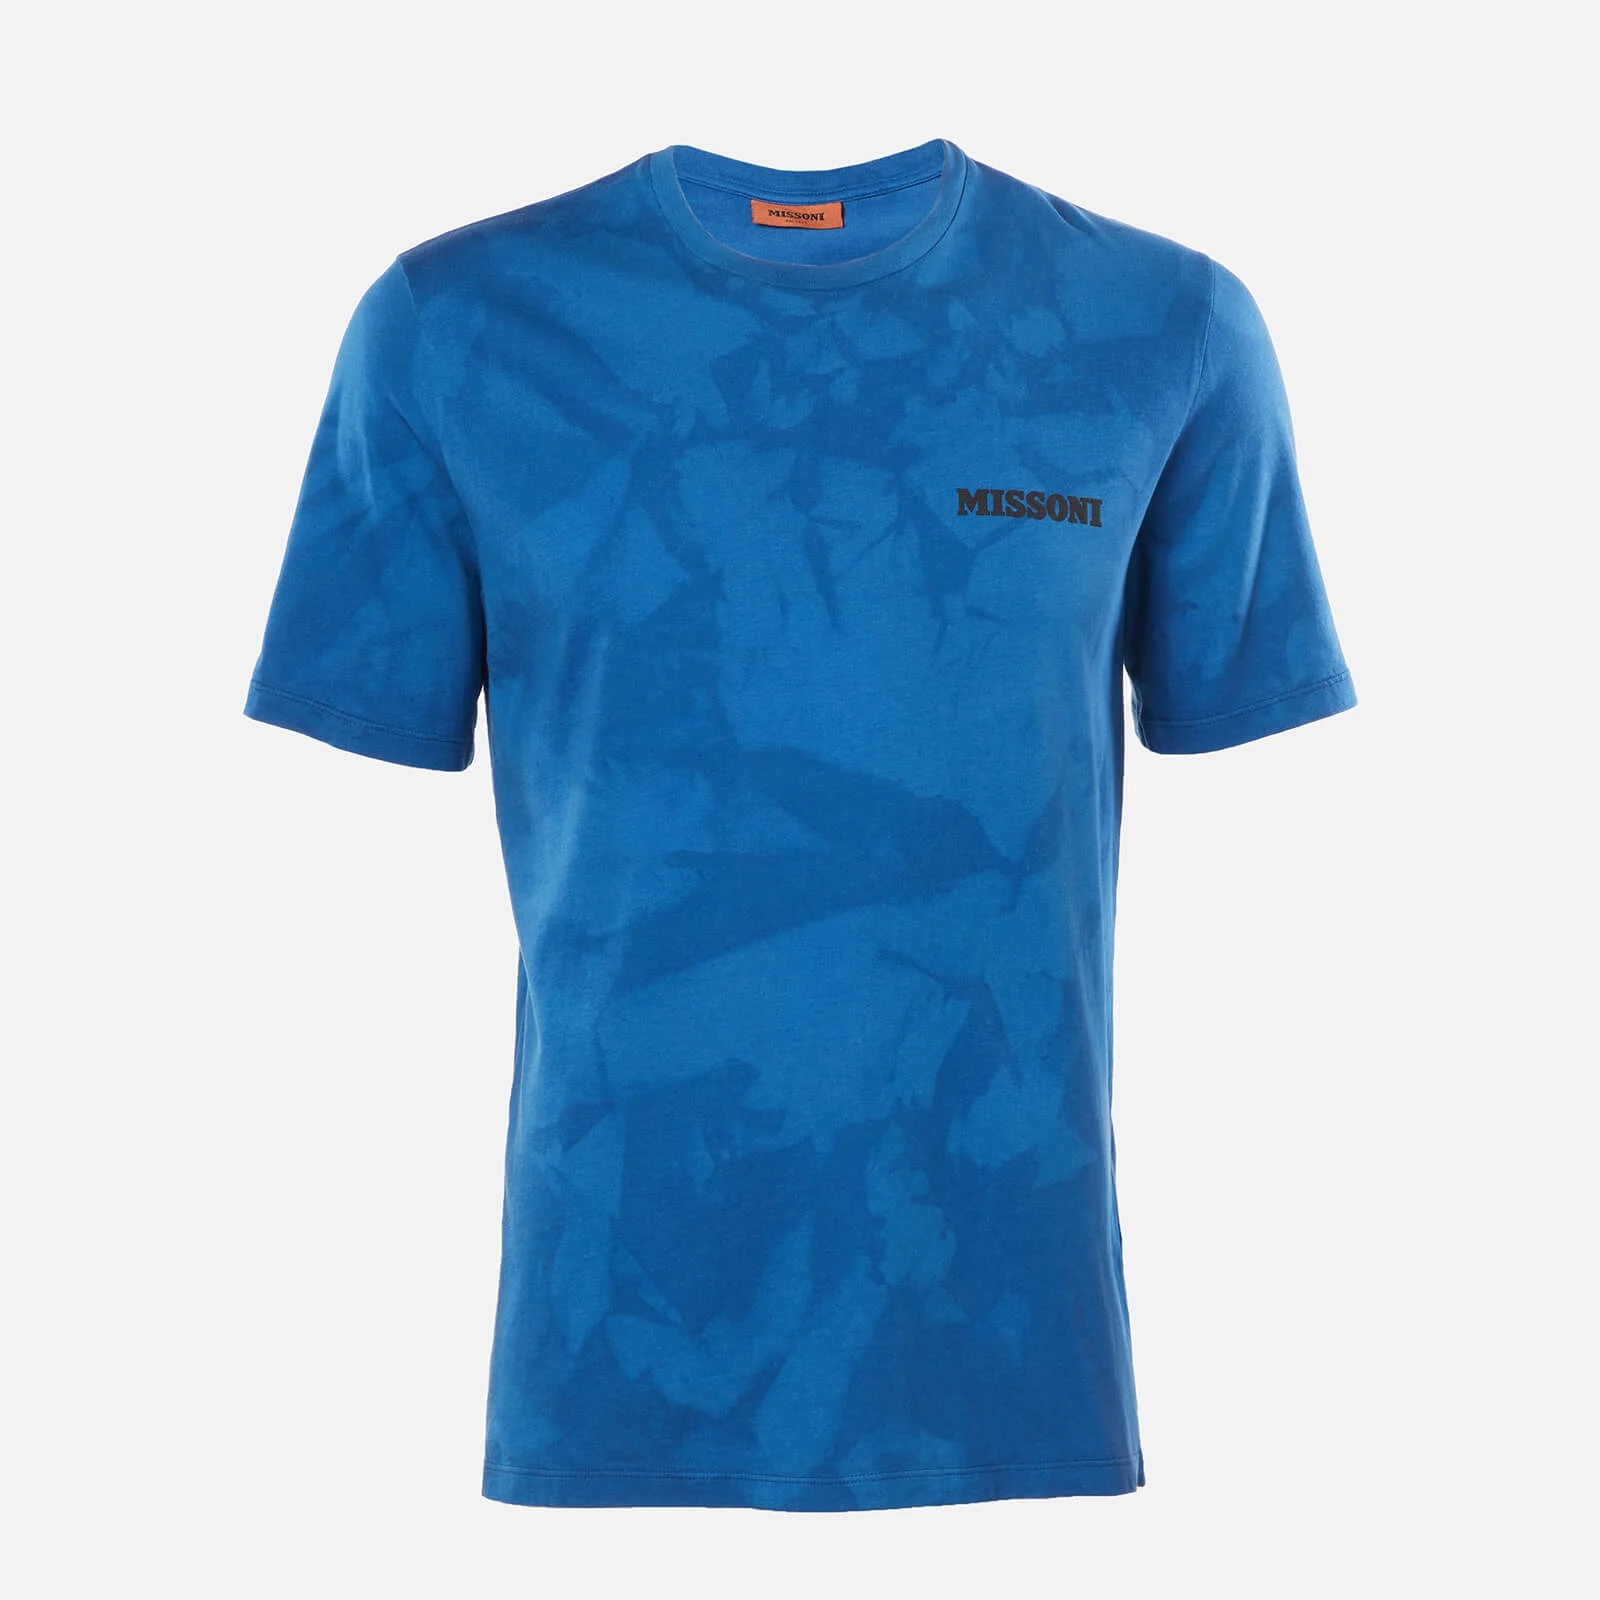 Missoni Men's Dyed T-Shirt - Multi Image 1